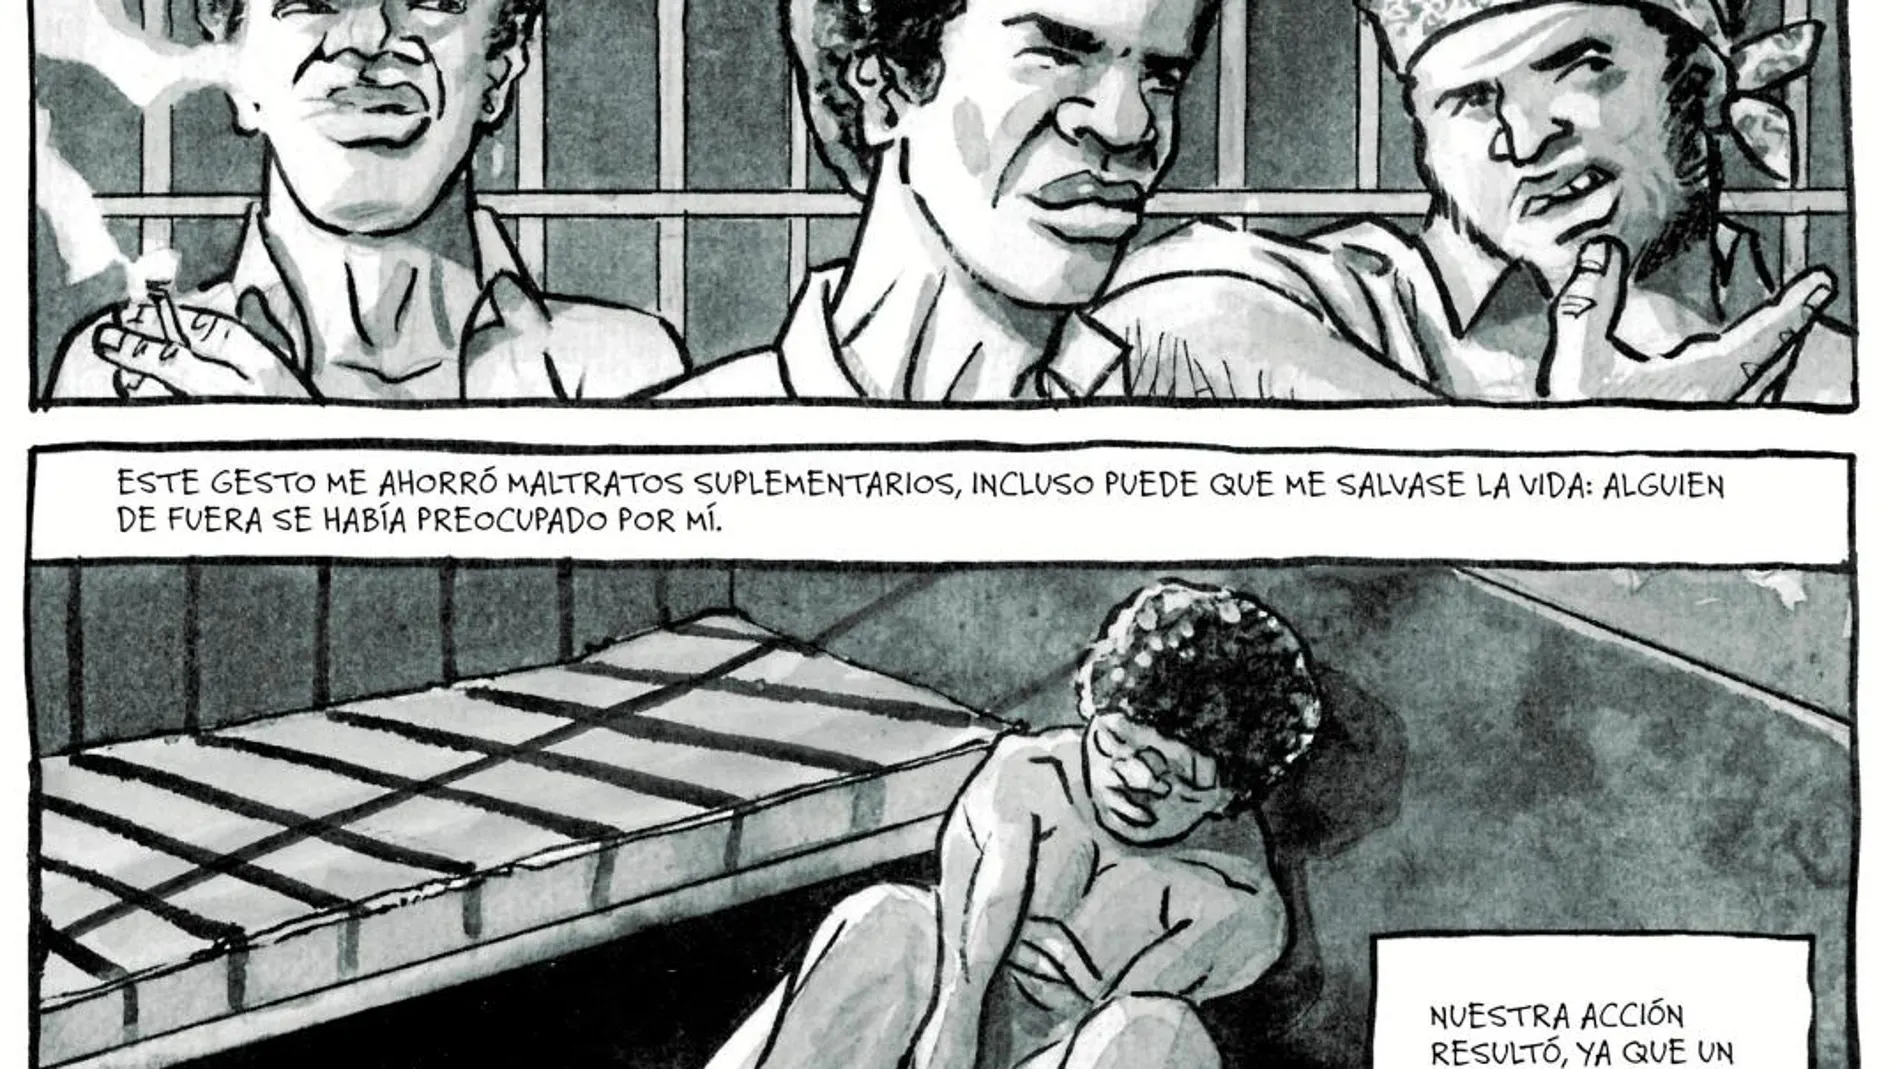 Una página de la historia que narra los abusos sufridos en prisión por los internos. Imagen: Bruno y David Cénou